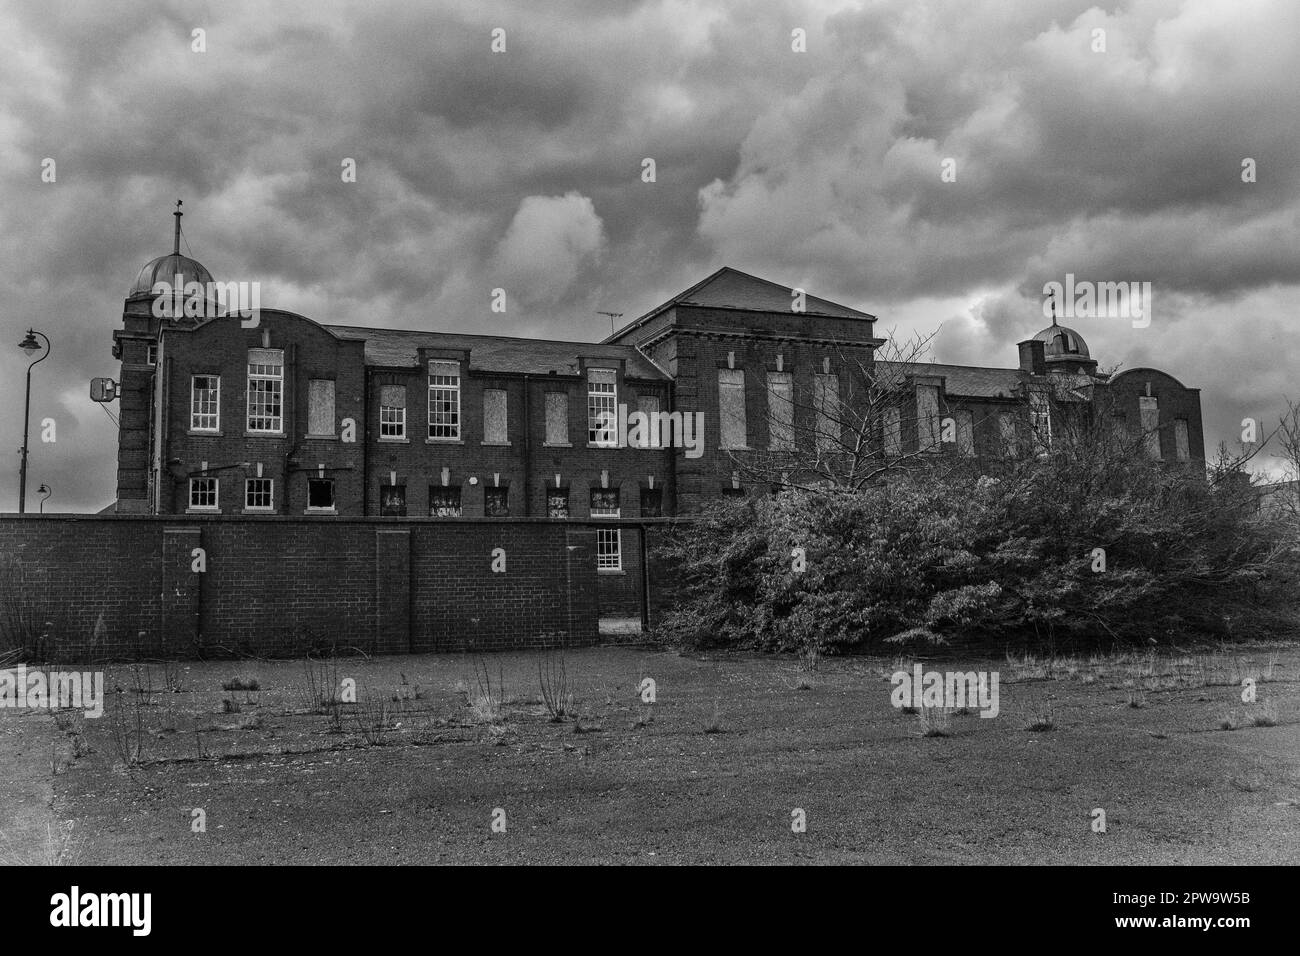 Vista esterna dell'edificio della scuola vittoriana abbandonata di Easington Colliery Foto Stock